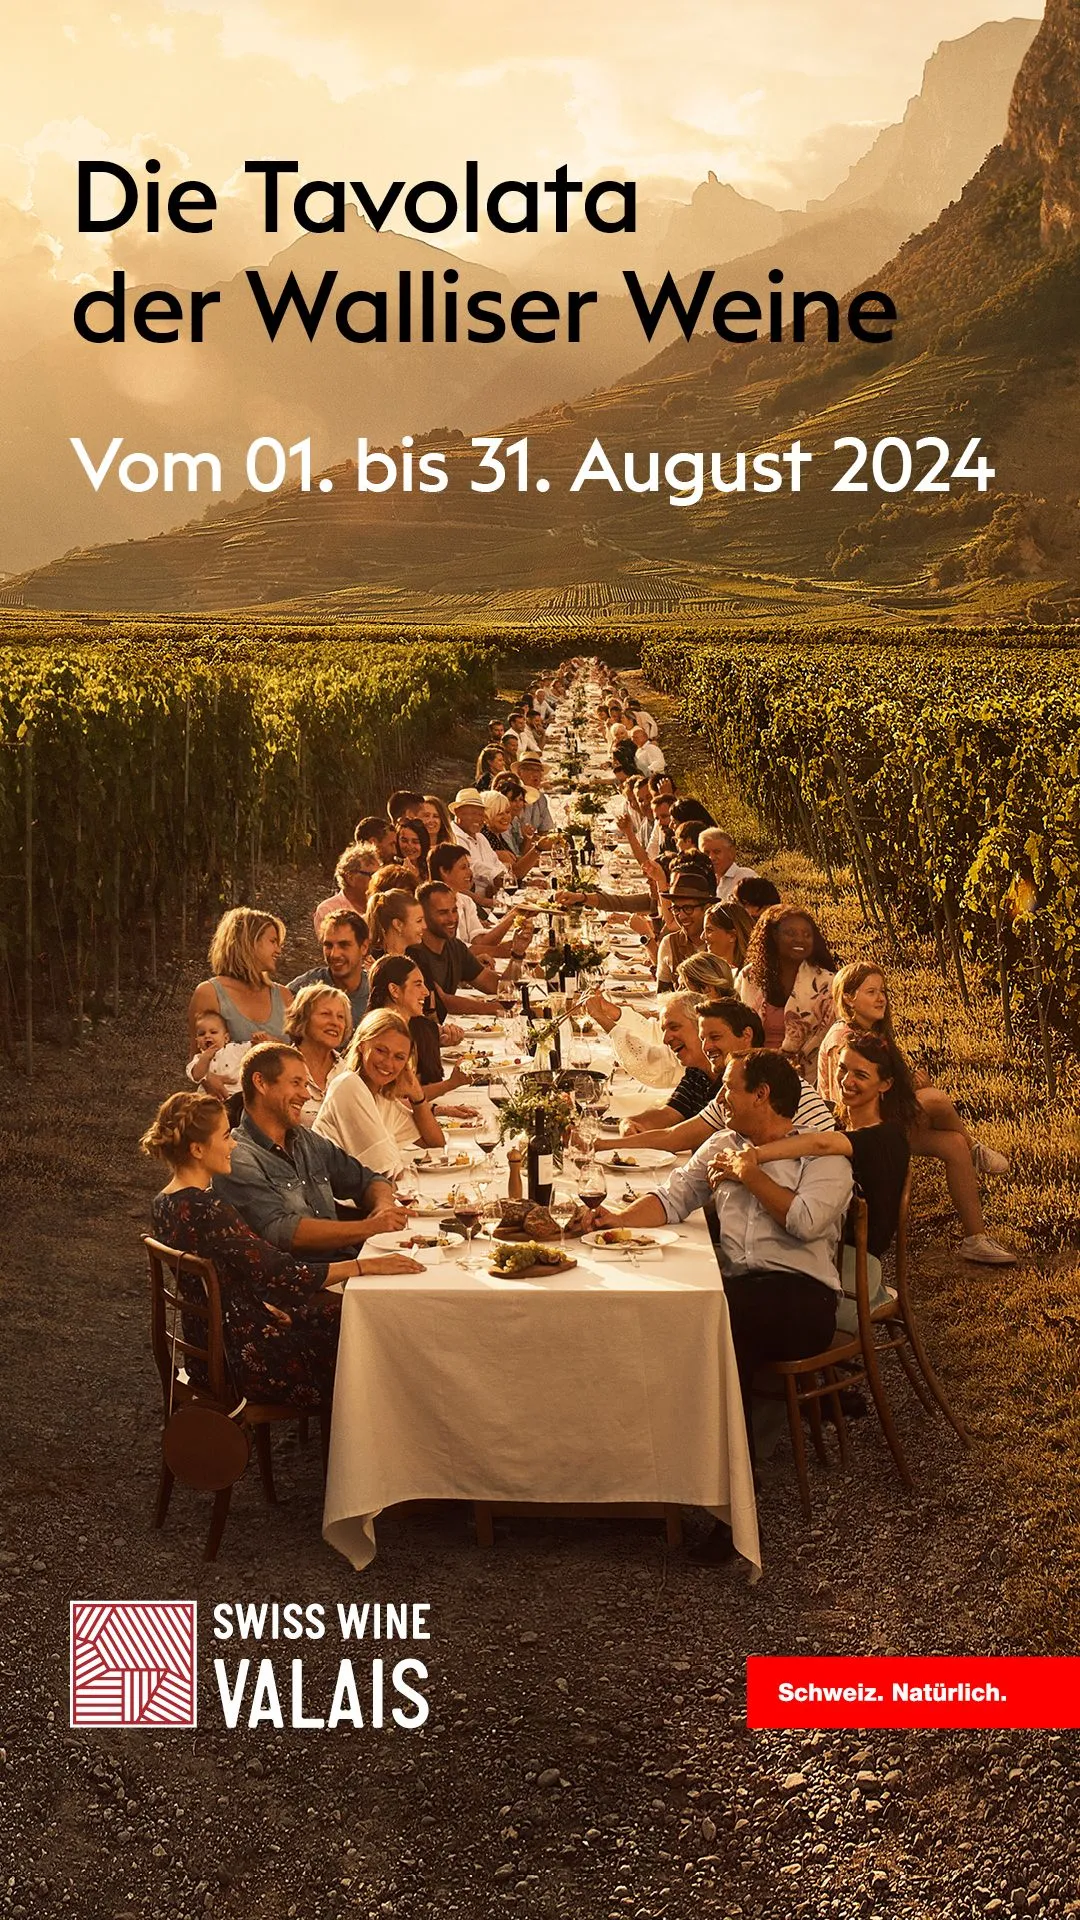 1080x1920_TAVOLATA_IG-STORY_DE - Swiss Wine Valais.jpg